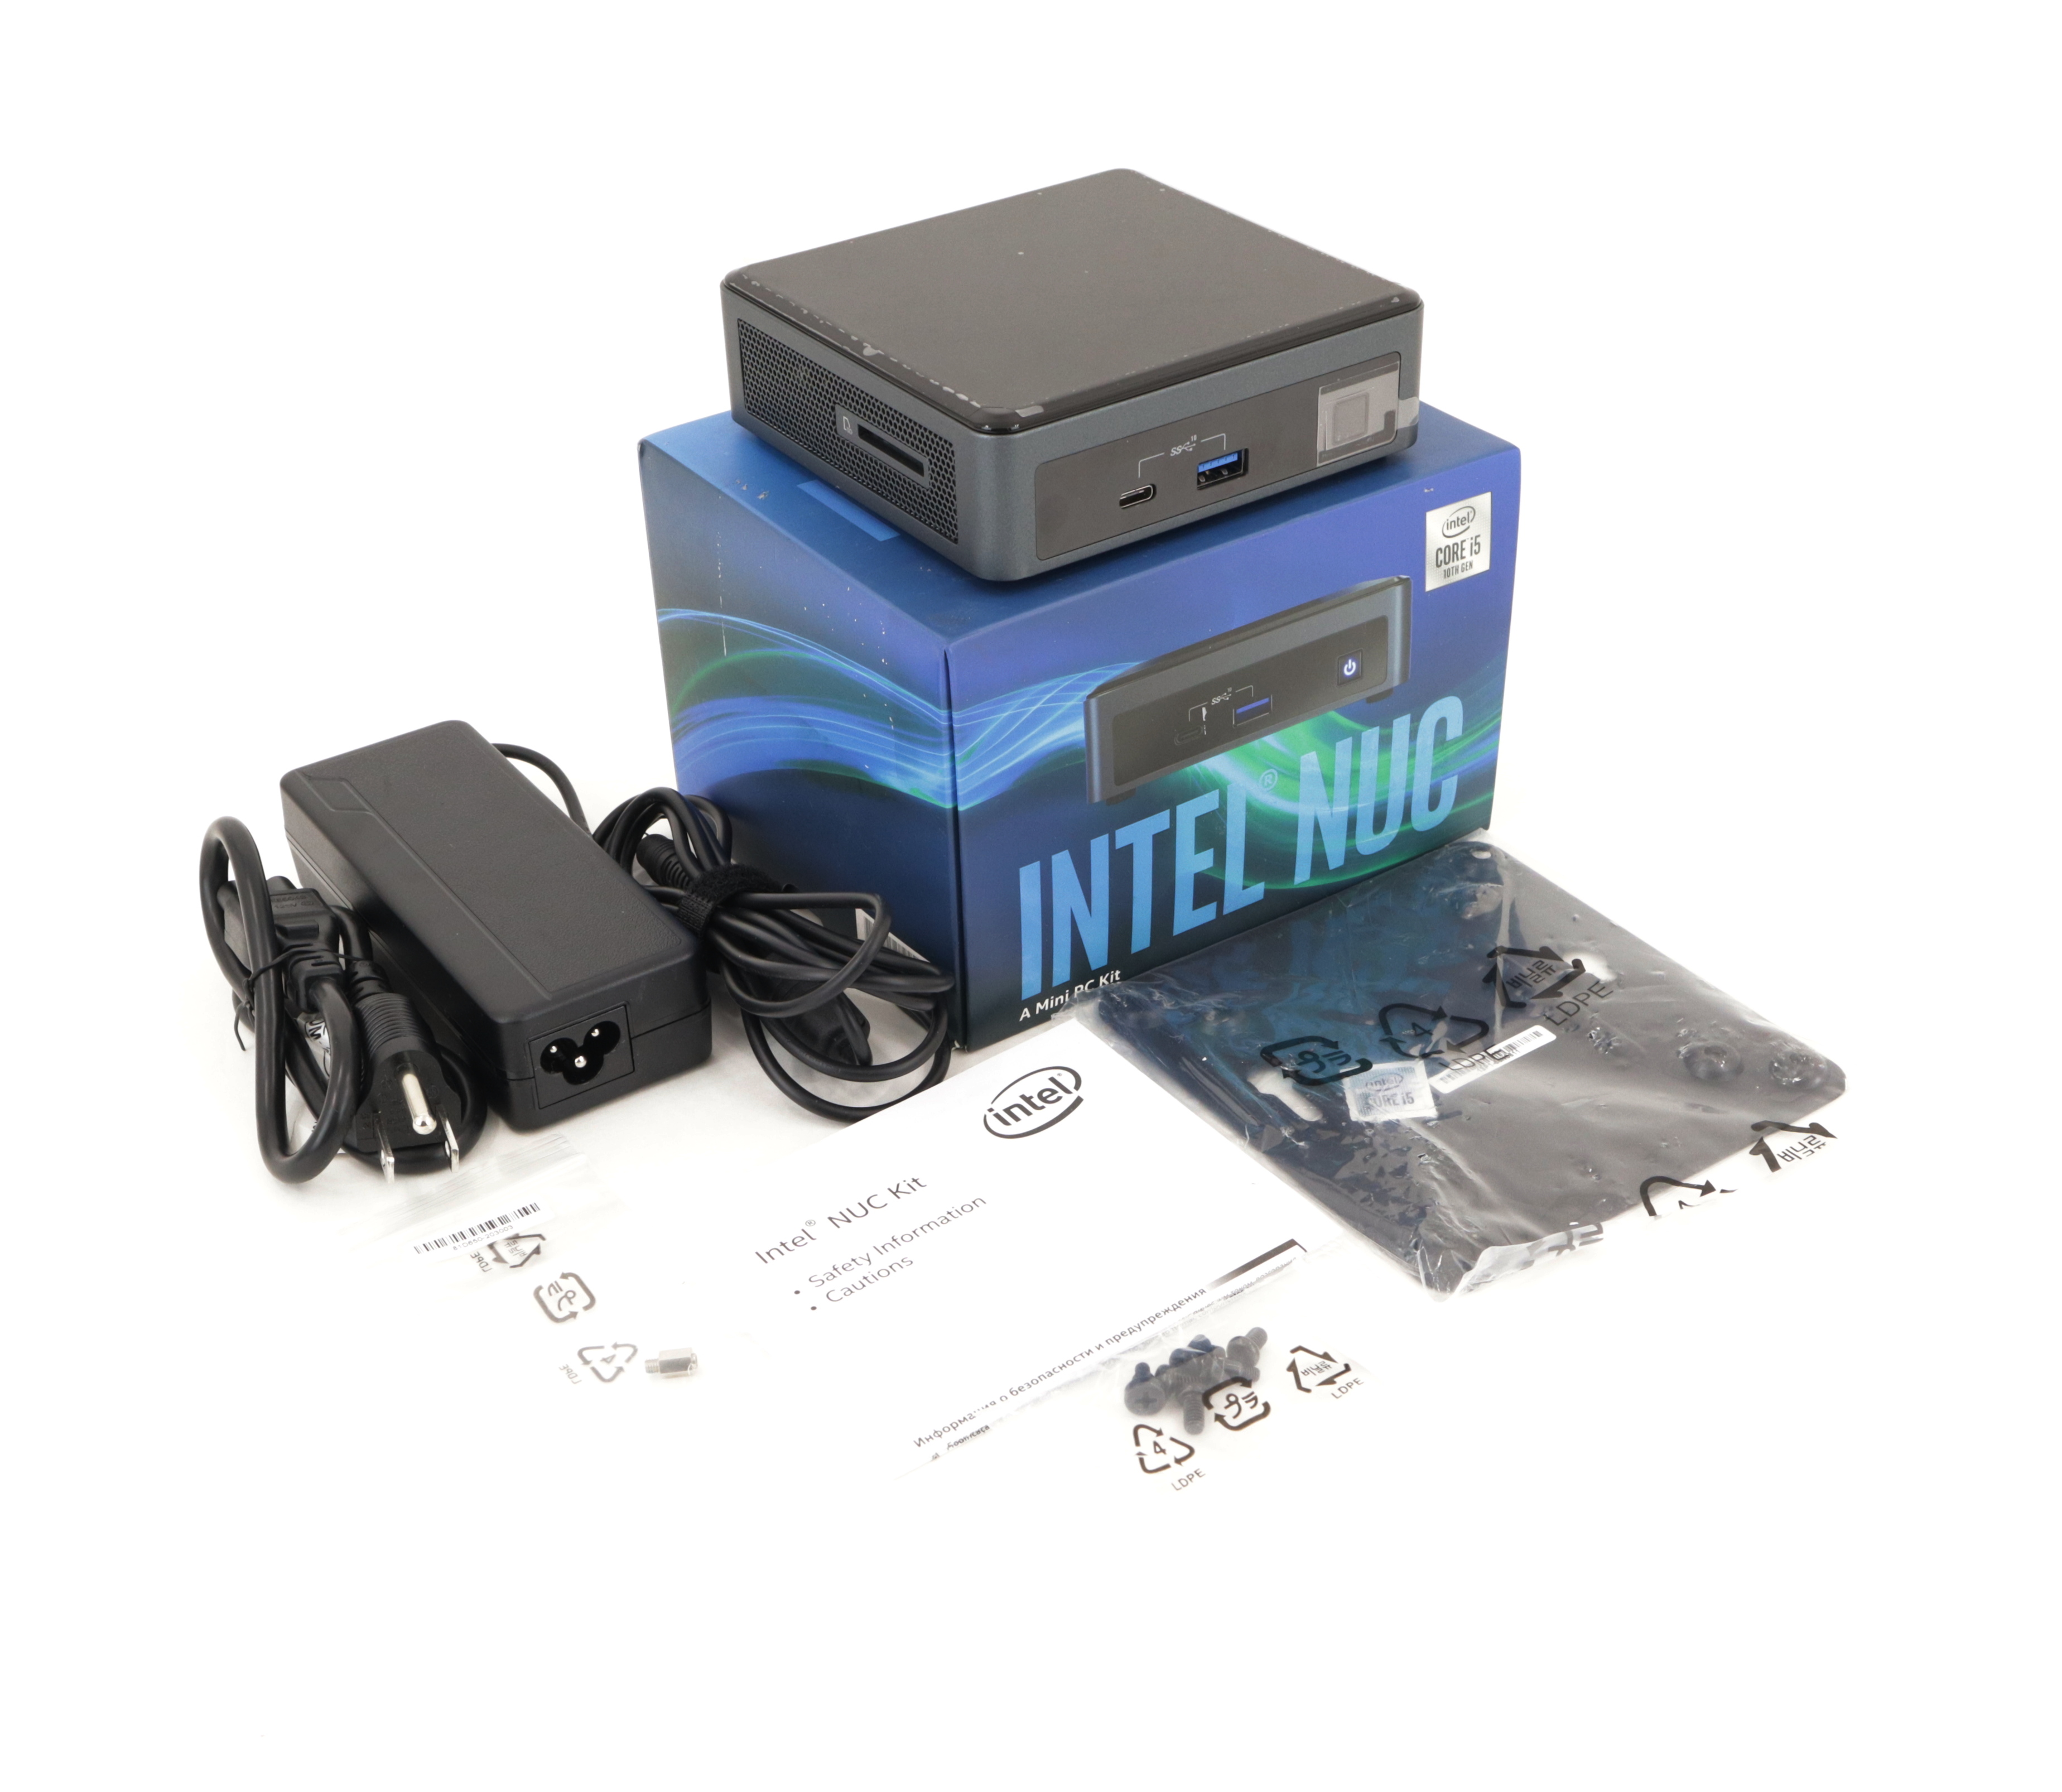 Intel NUC 10 Kit NUC10i5FNKN mini PC Barebone i5-10210U 1.6GHz BXNUC10I5FNKN1